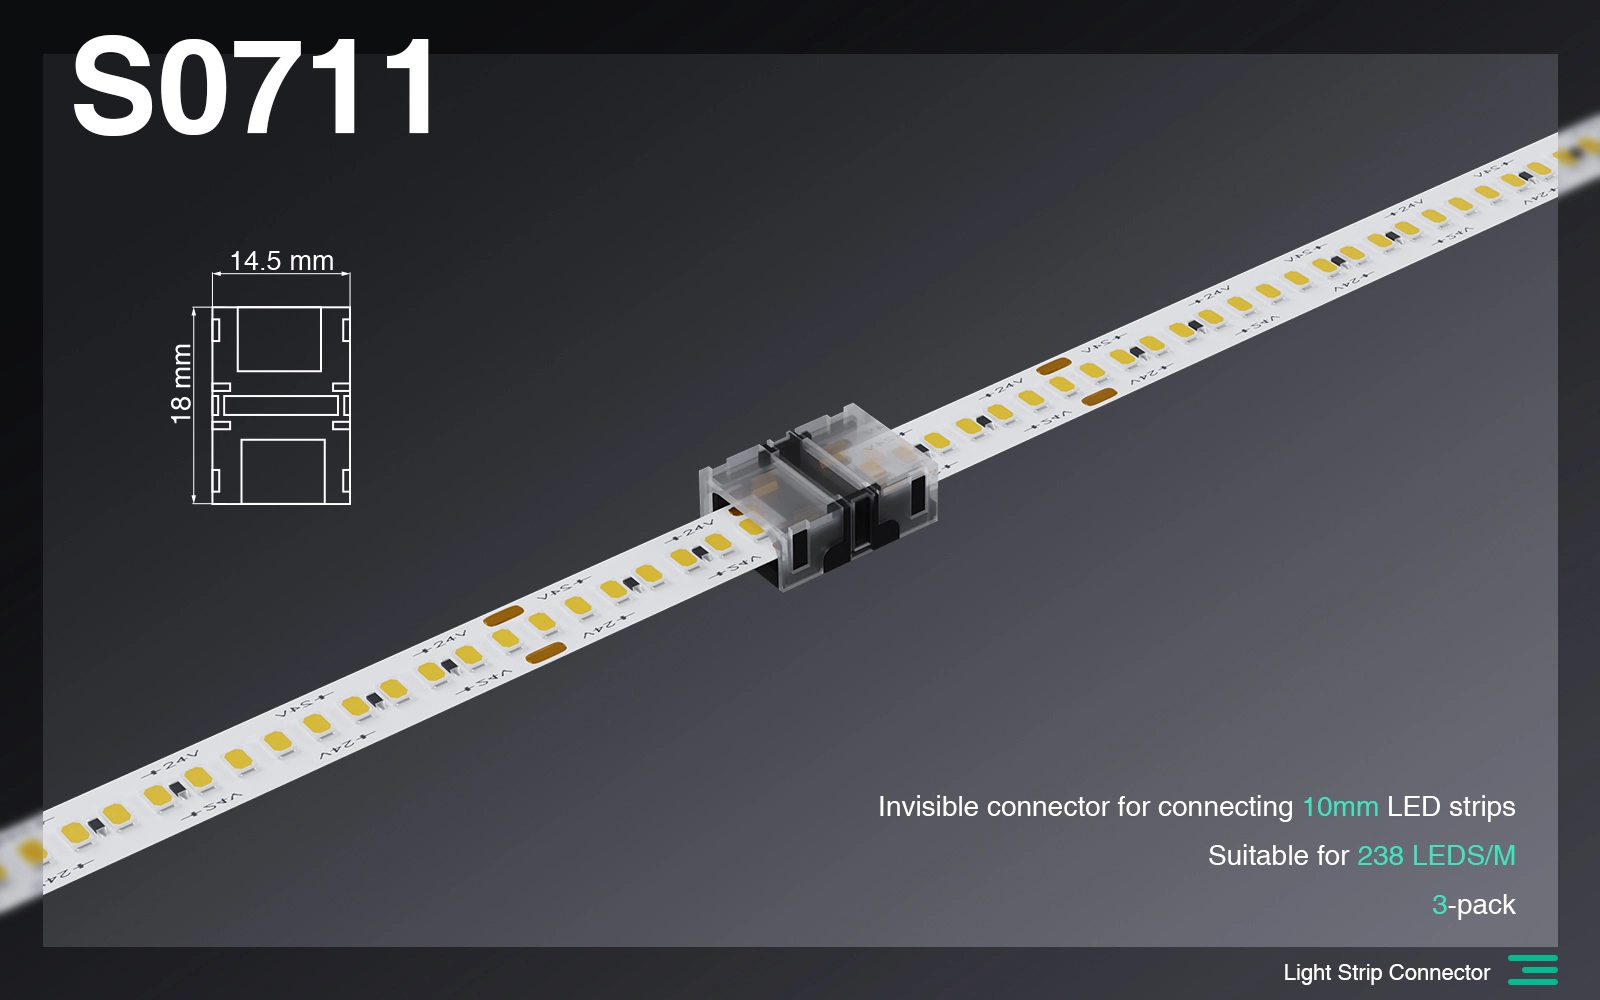 لوازم جانبی/اتصال کانکتور نامرئی نوار نور LED 10mm/2Pin/مناسب برای 240 LED-لوازم جانبی--S0711 01